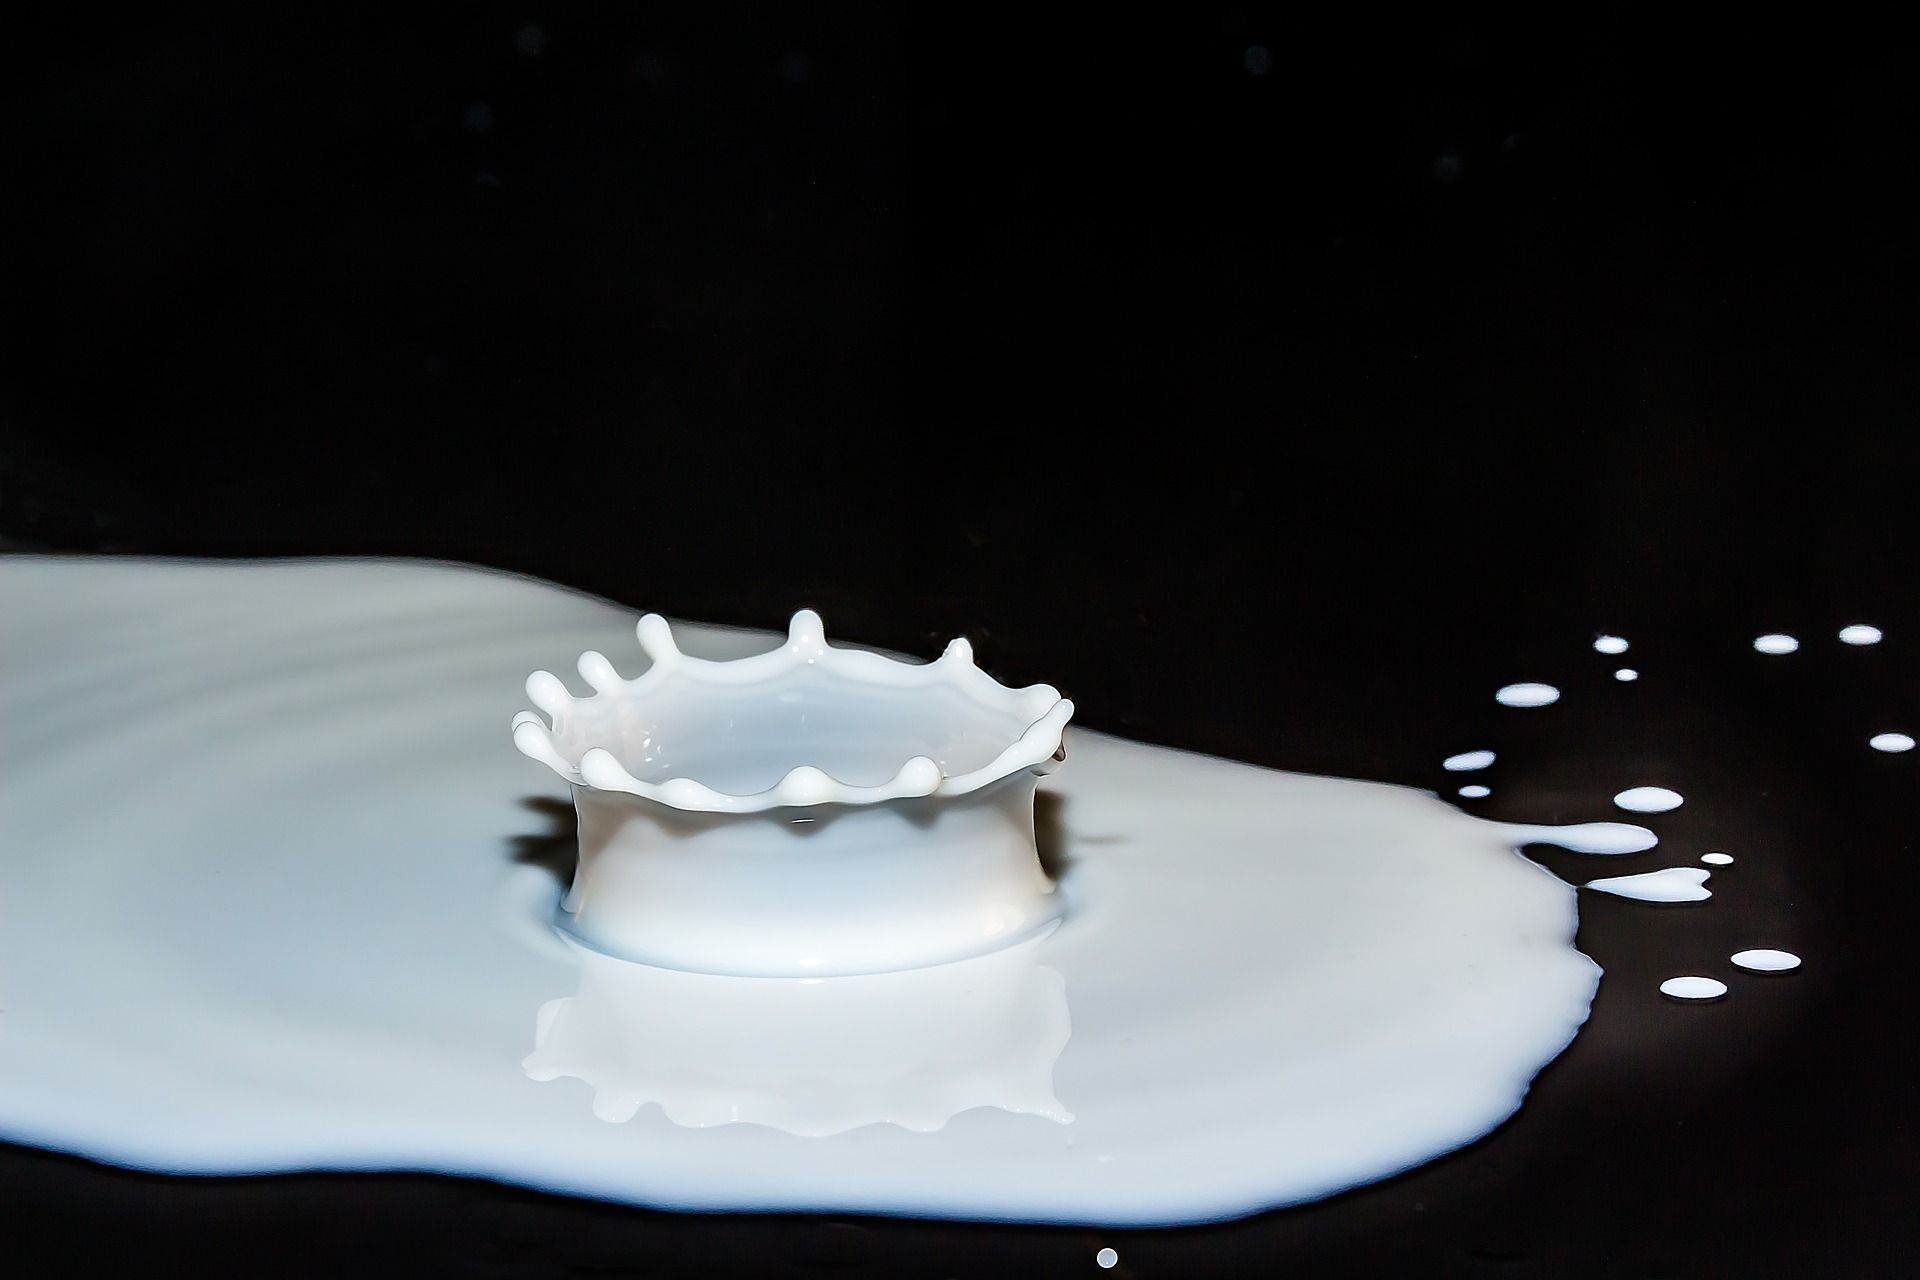 La tensione superficiale di schizzi di latte su un tavolo